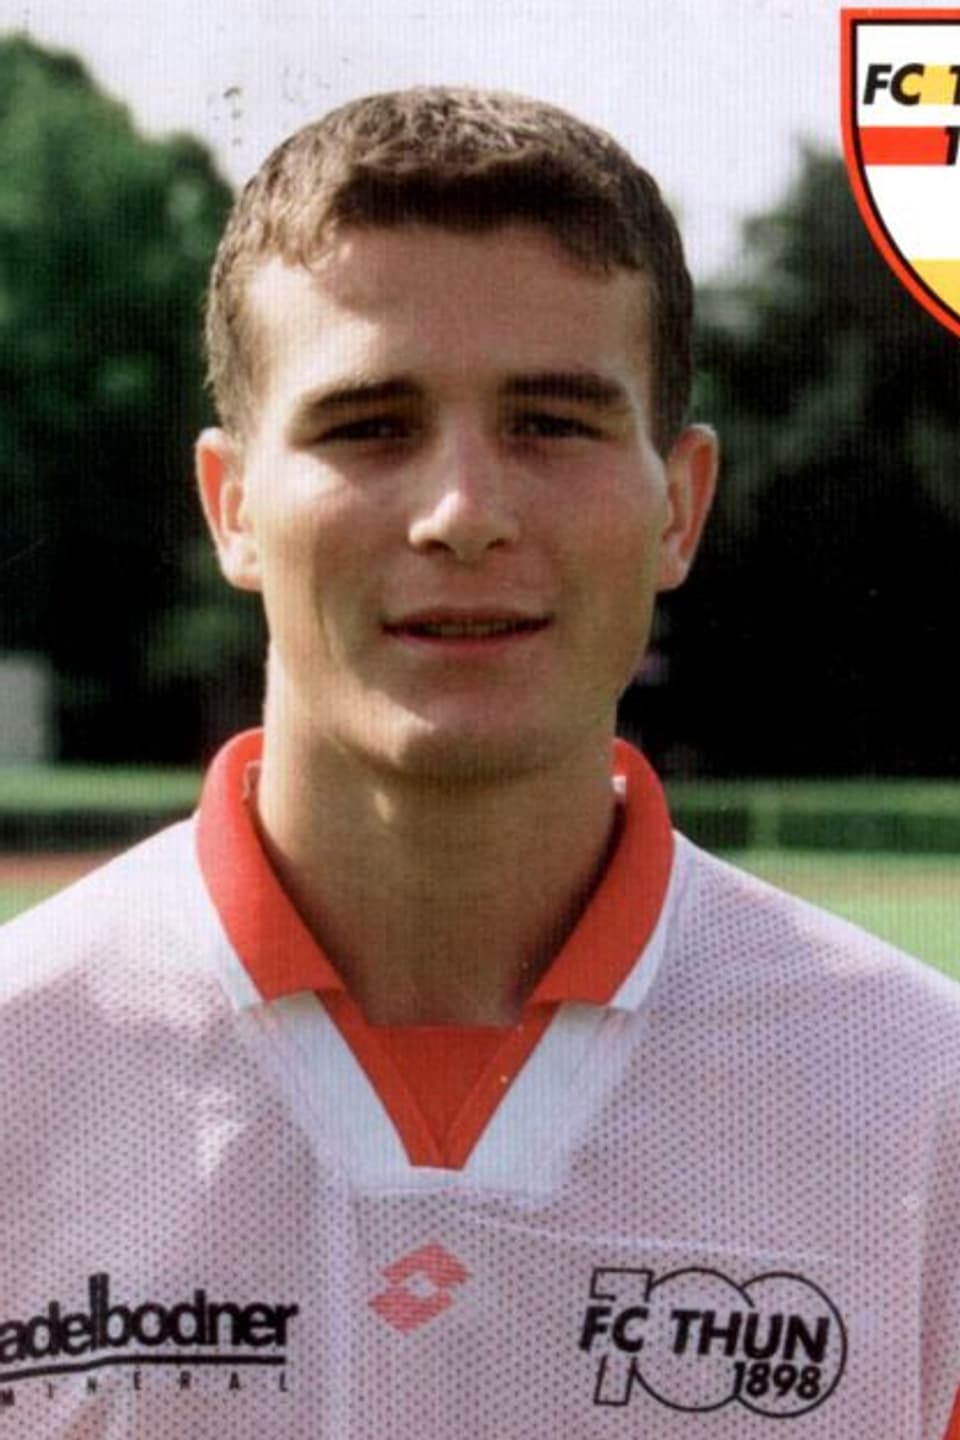 1998 folgte dann der Wechsel zum FC Thun. Mit den Berner Oberländern spielte Alex Frei eine Saison lang in der zweihöchsten Schweizer Spielklasse, ehe es ihn bereits wieder weiter zog.